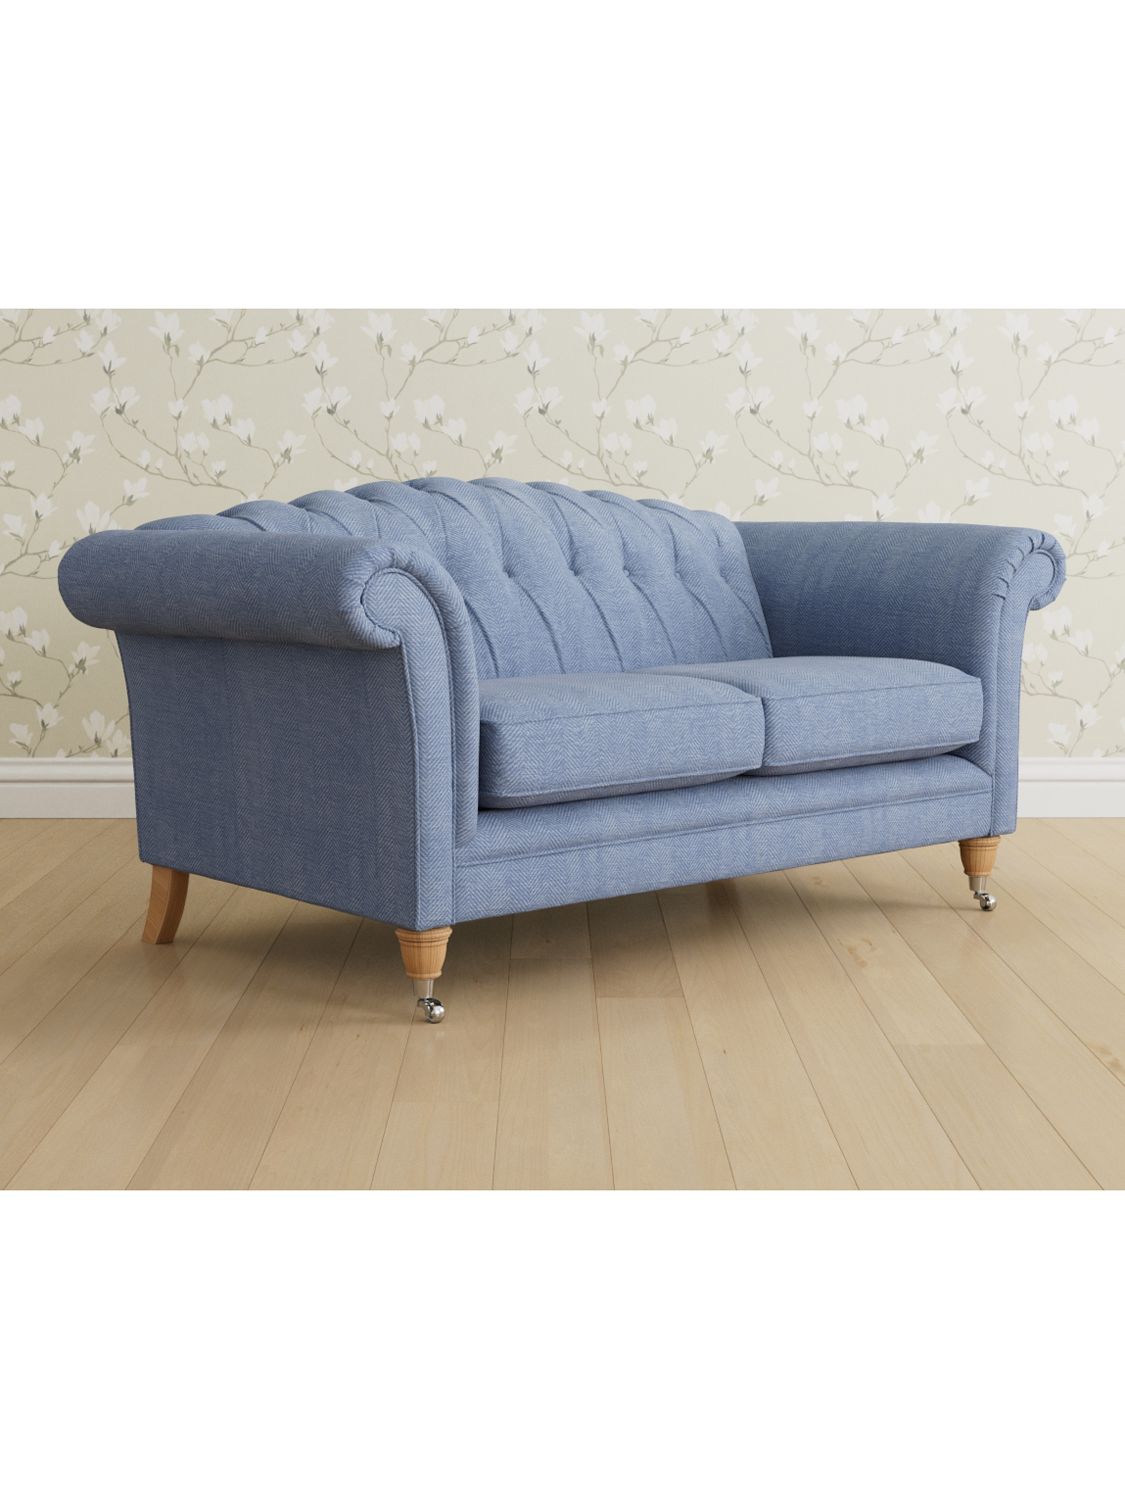 Gloucester Range, Laura Ashley Gloucester Medium 2 Seater Sofa, Oak Leg, Edwin Seaspray